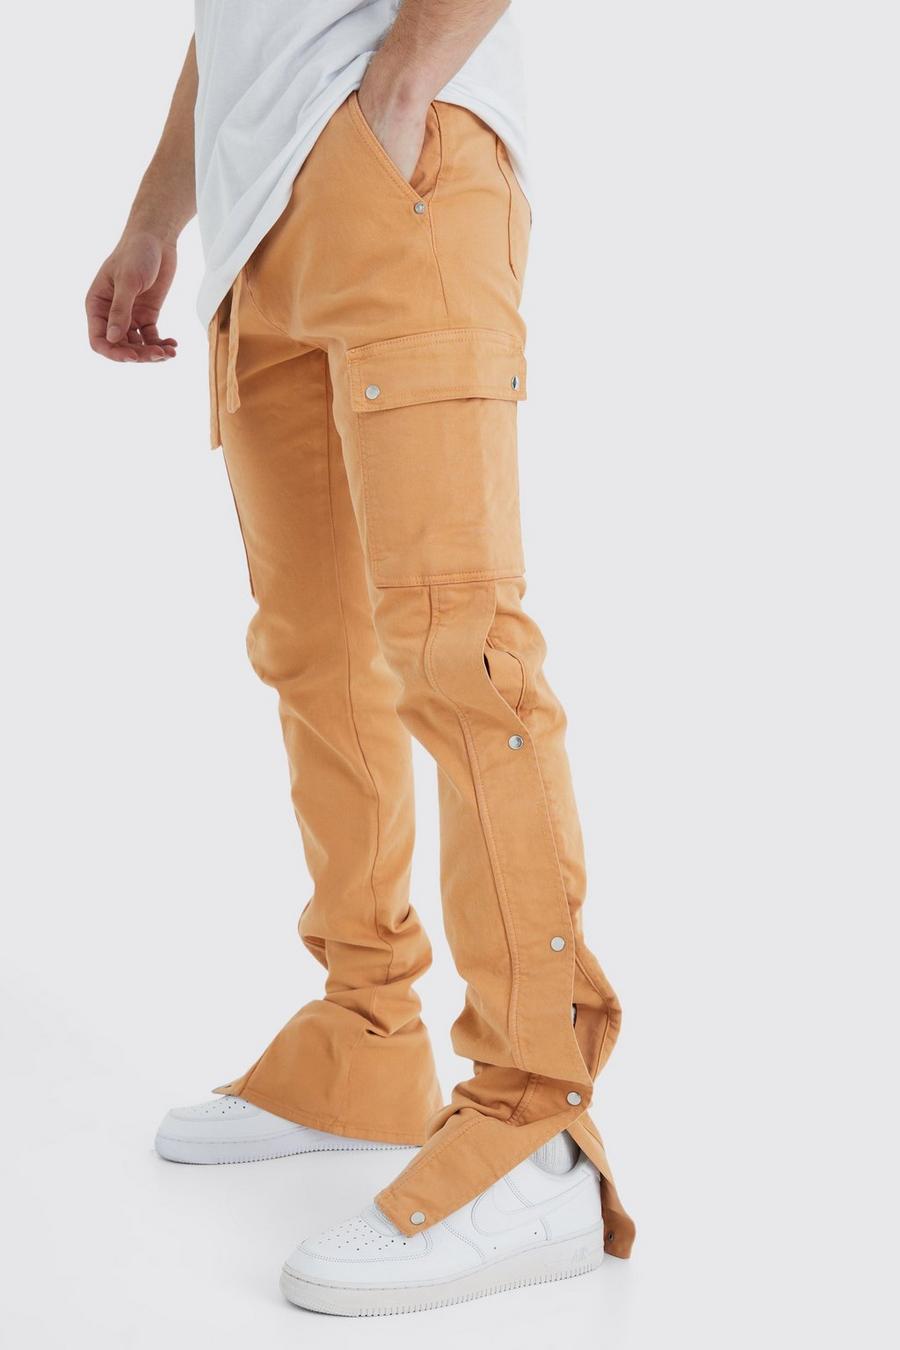 Pantaloni Cargo Tall Skinny Fit con vita fissa, pieghe sul fondo e bottoni a pressione sul fondo, Orange naranja